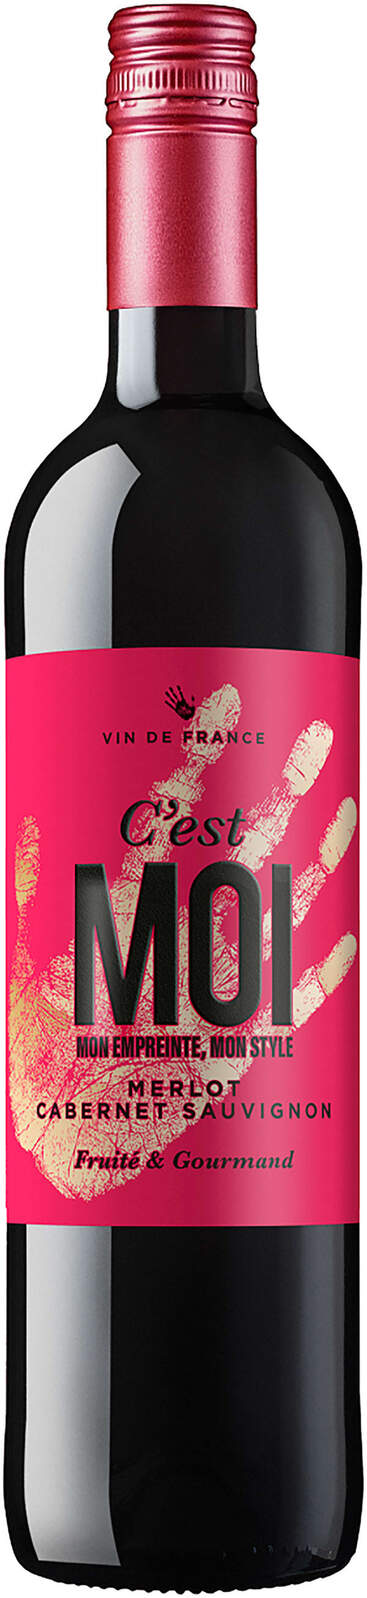 C'Est Moi (France) 2019 Merlot Cabernet